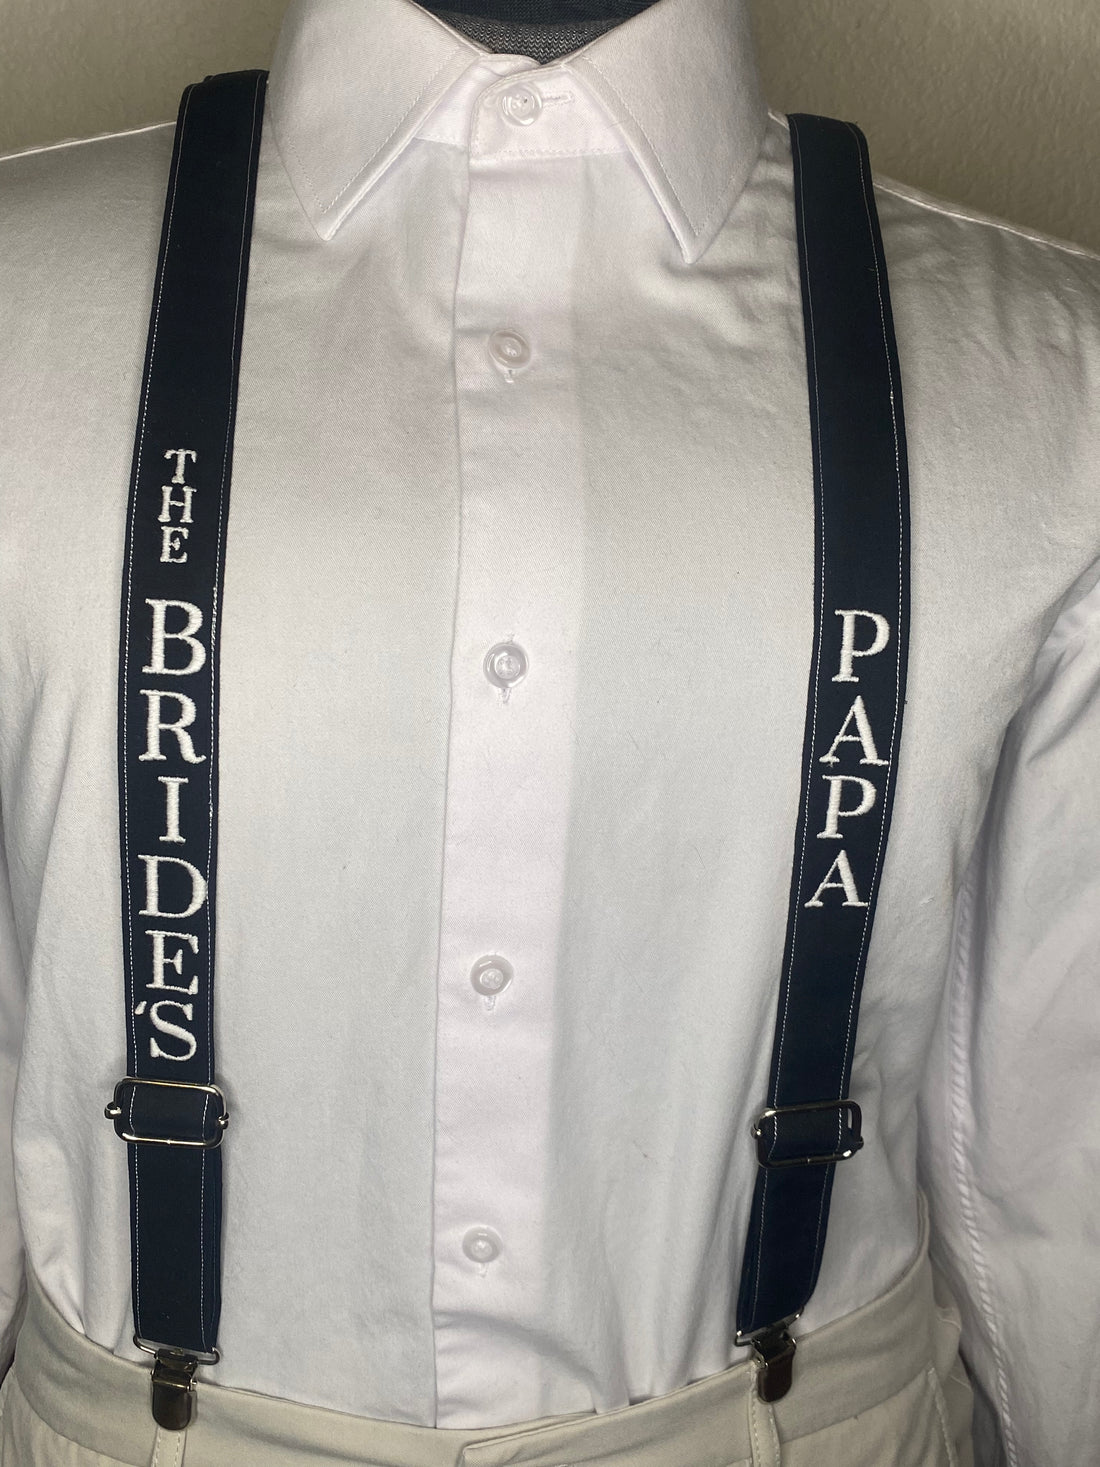 Custom wedding suspenders and ties